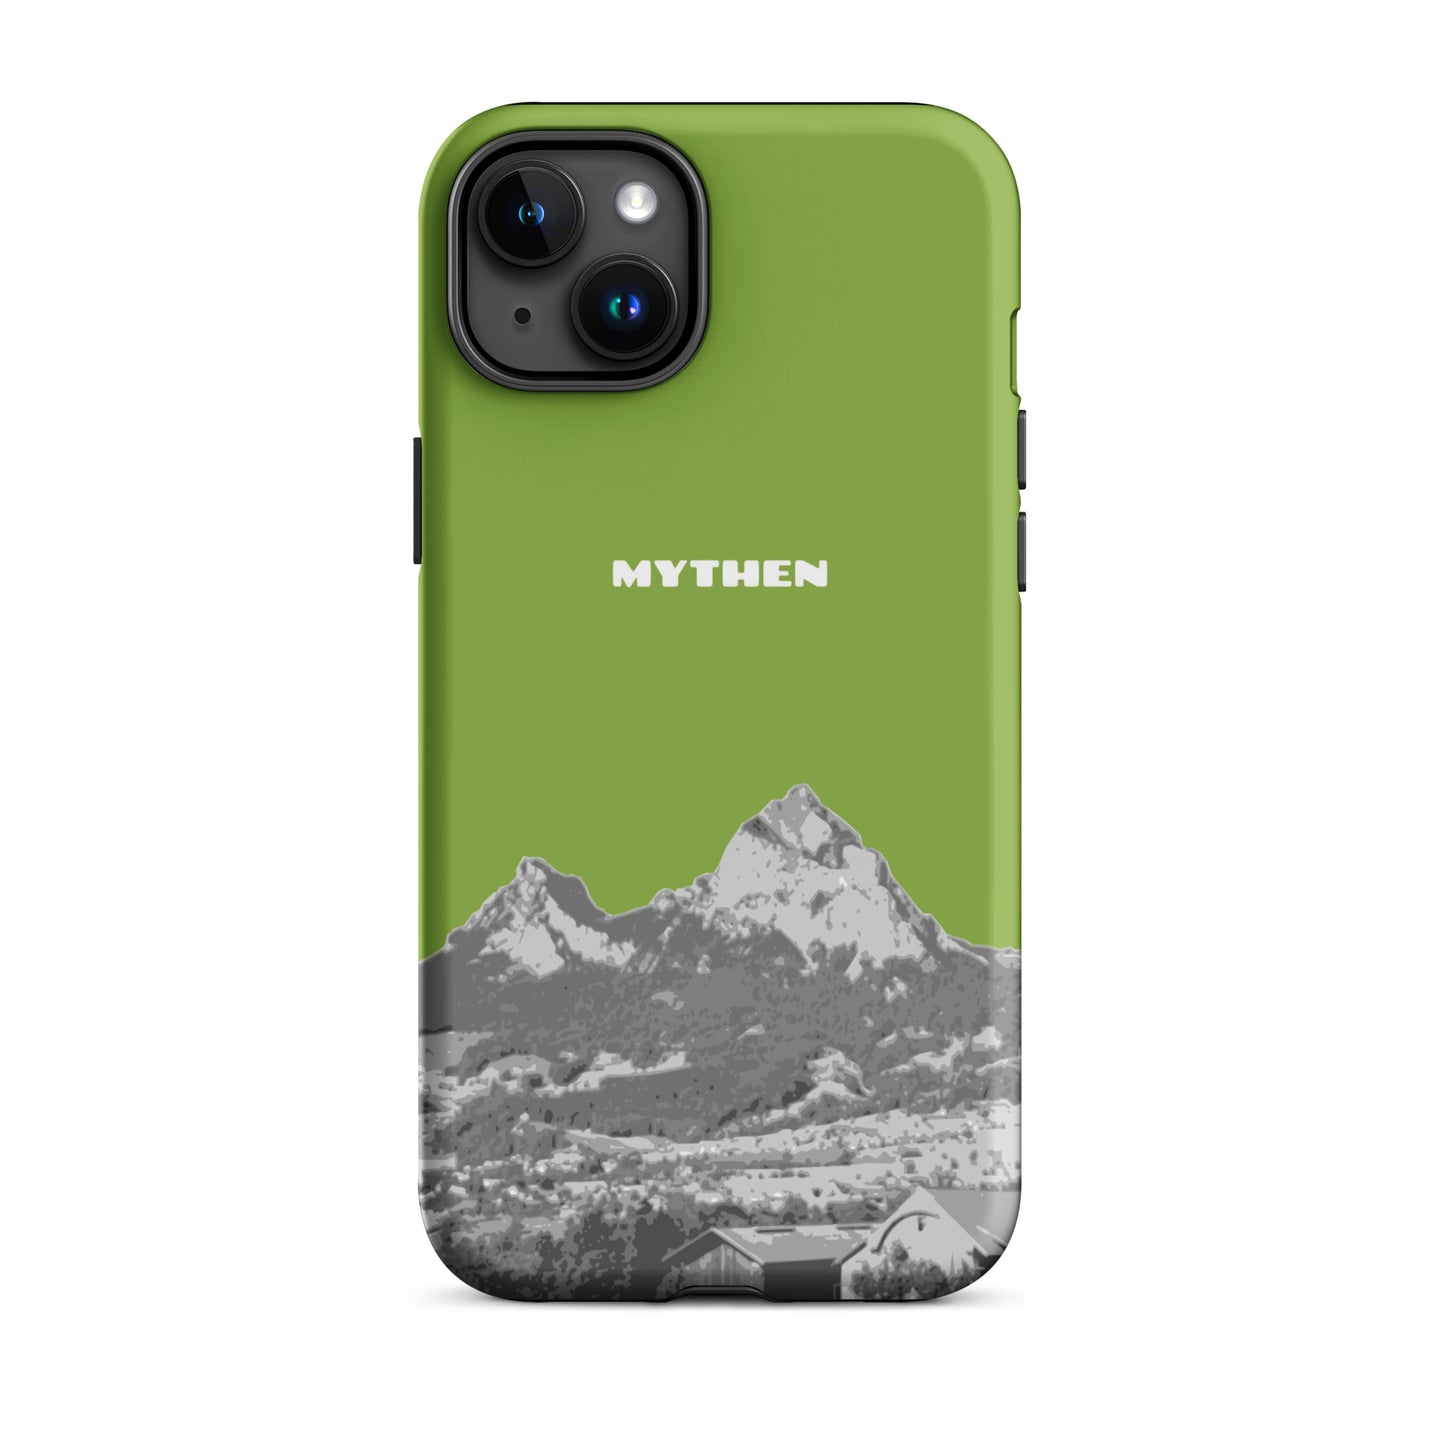 Hülle für das iPhone 15 Plus von Apple in der Farbe Gelbgrün, die den Grossen Mythen und den Kleinen Mythen bei Schwyz zeigt. 